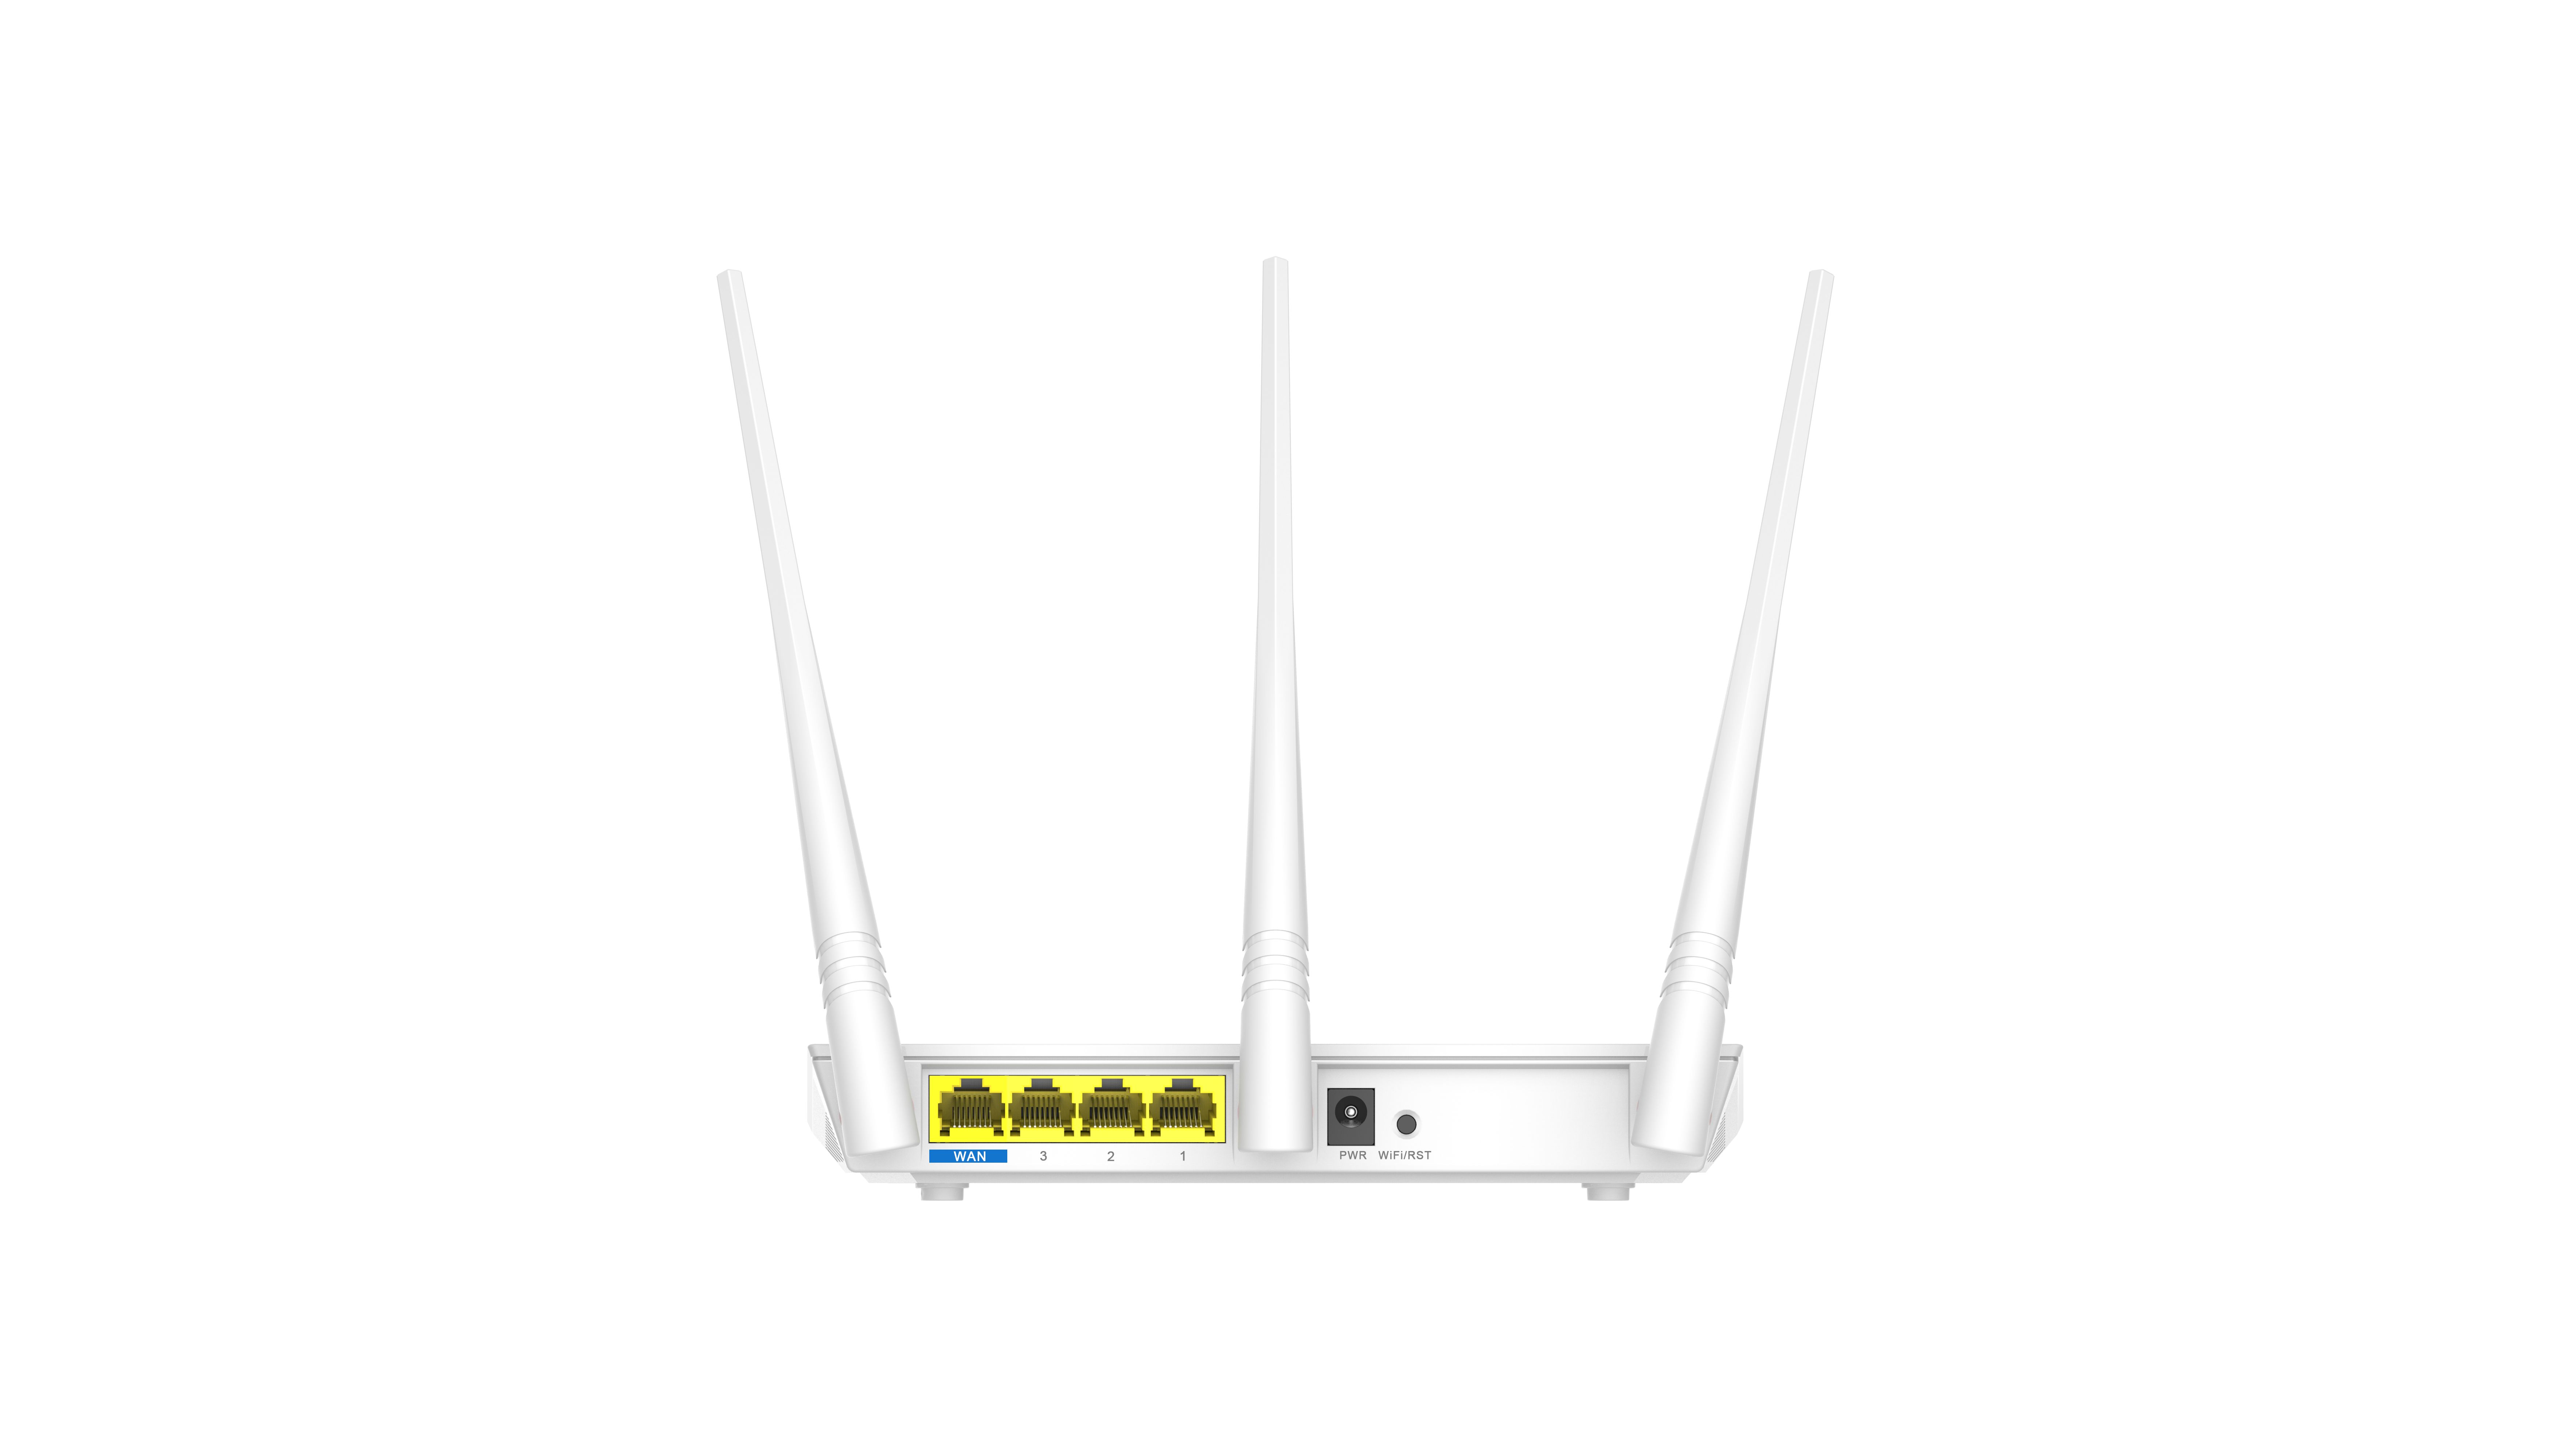 Bộ phát wifi không dây 3 râu kích sóng repeater Wireless Router F3 Tenda hàng chính hãng